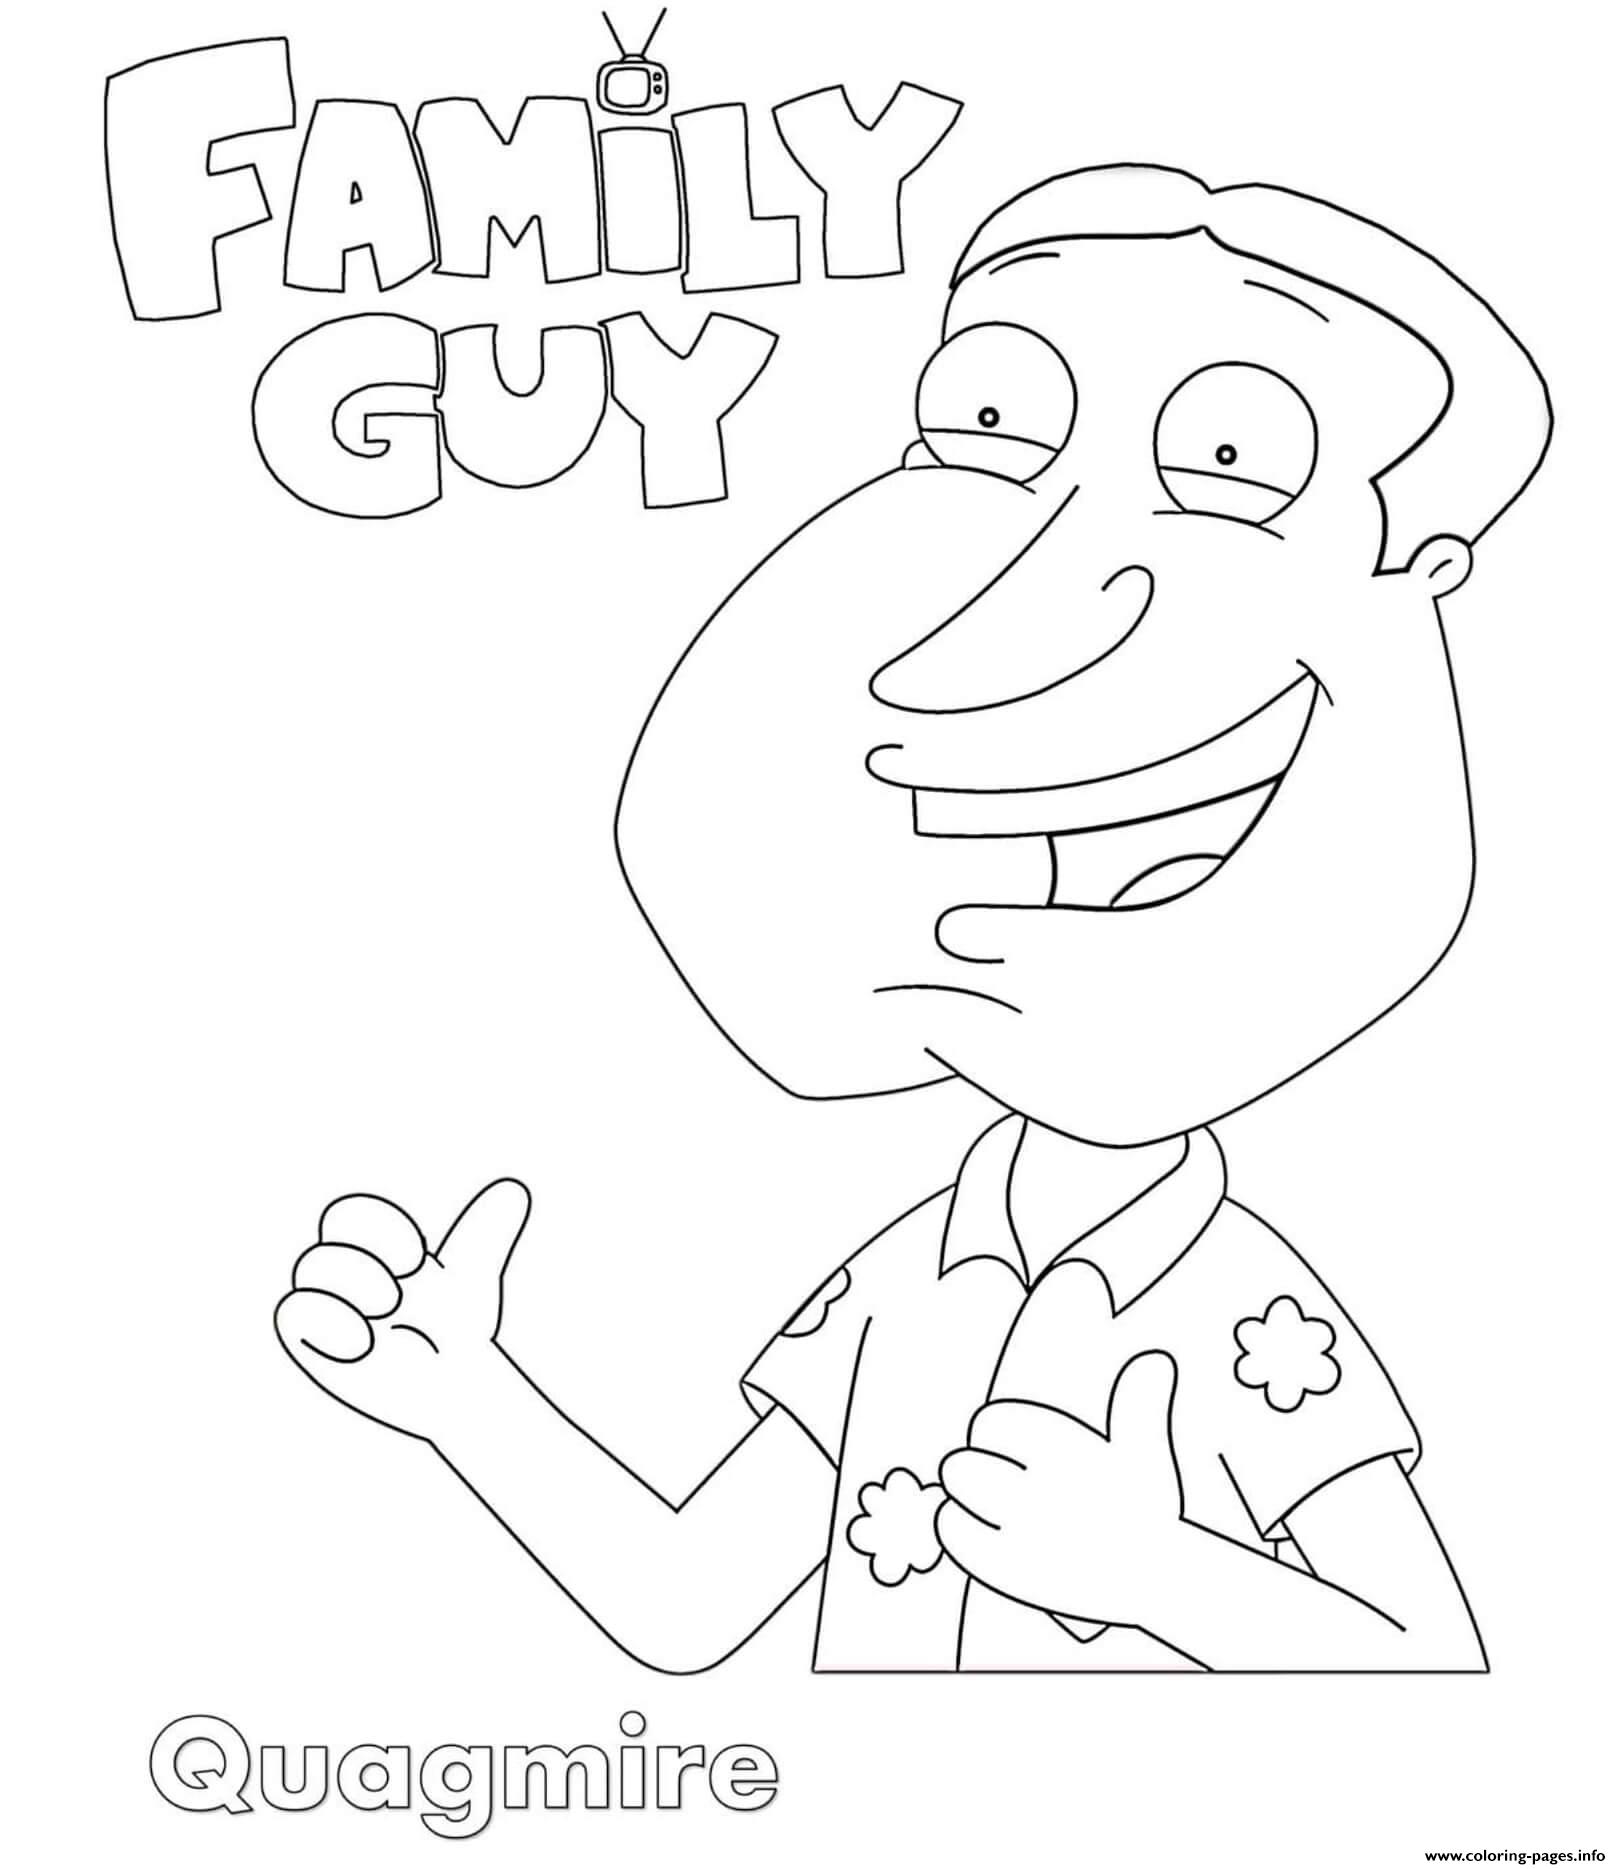 Family Guy Quagmire coloring